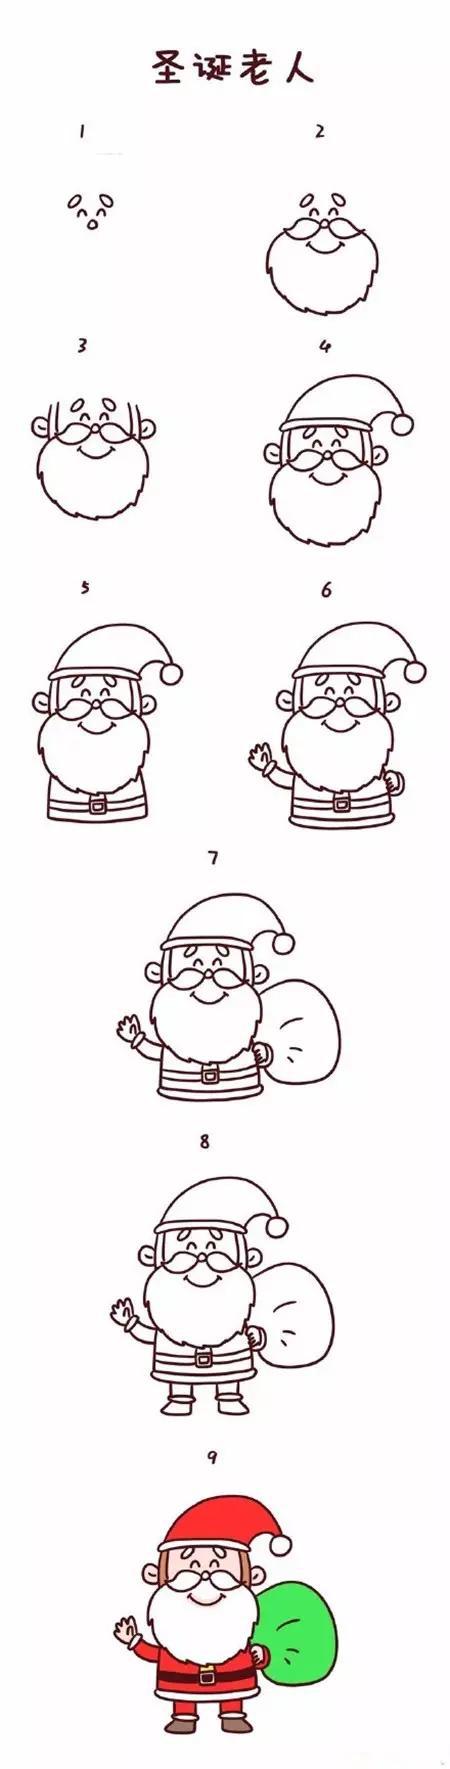 圣诞节简笔画图片大全 简单又可爱的圣诞节简笔画(3)